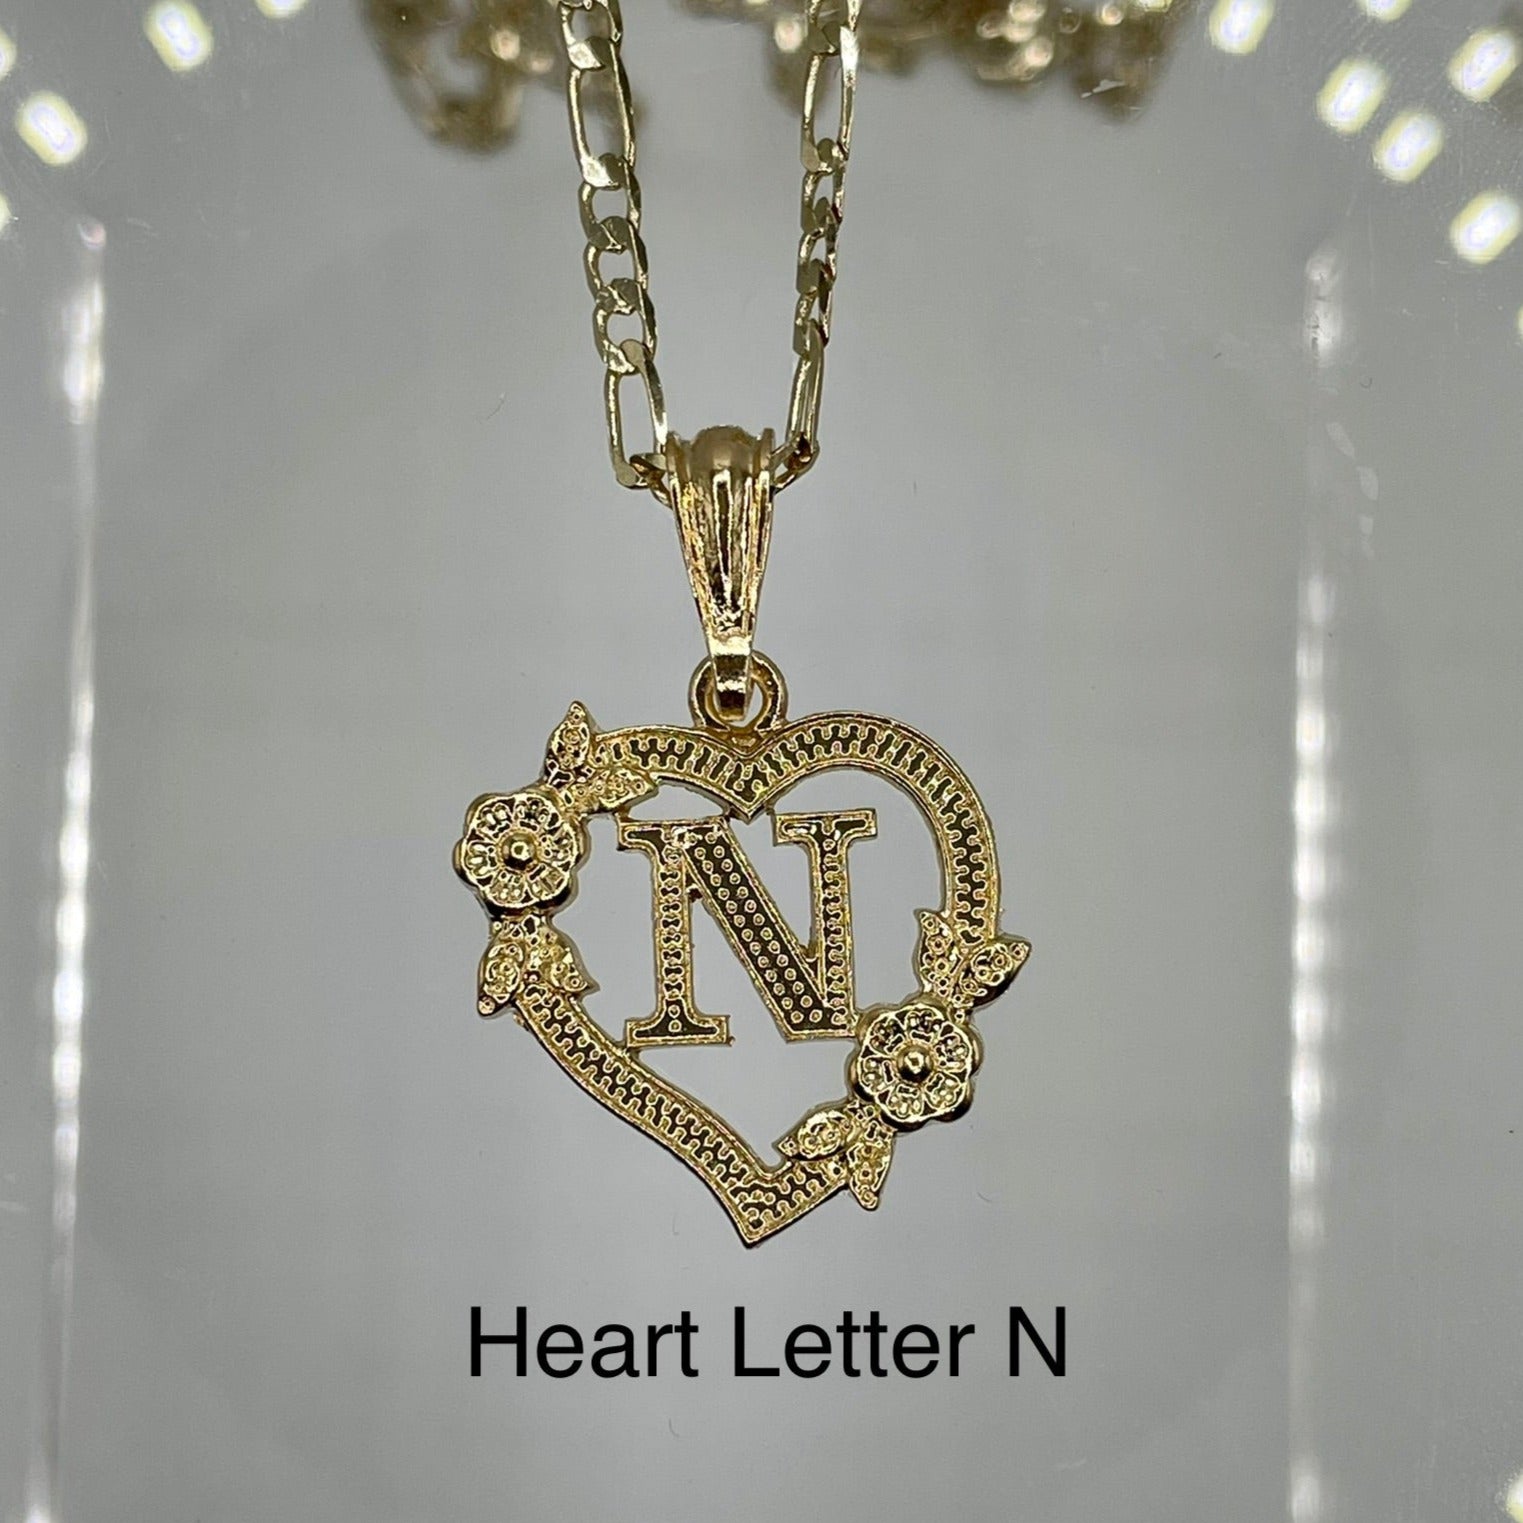 Heart letter N pendant. Gold heart pendant. Letter pendants.